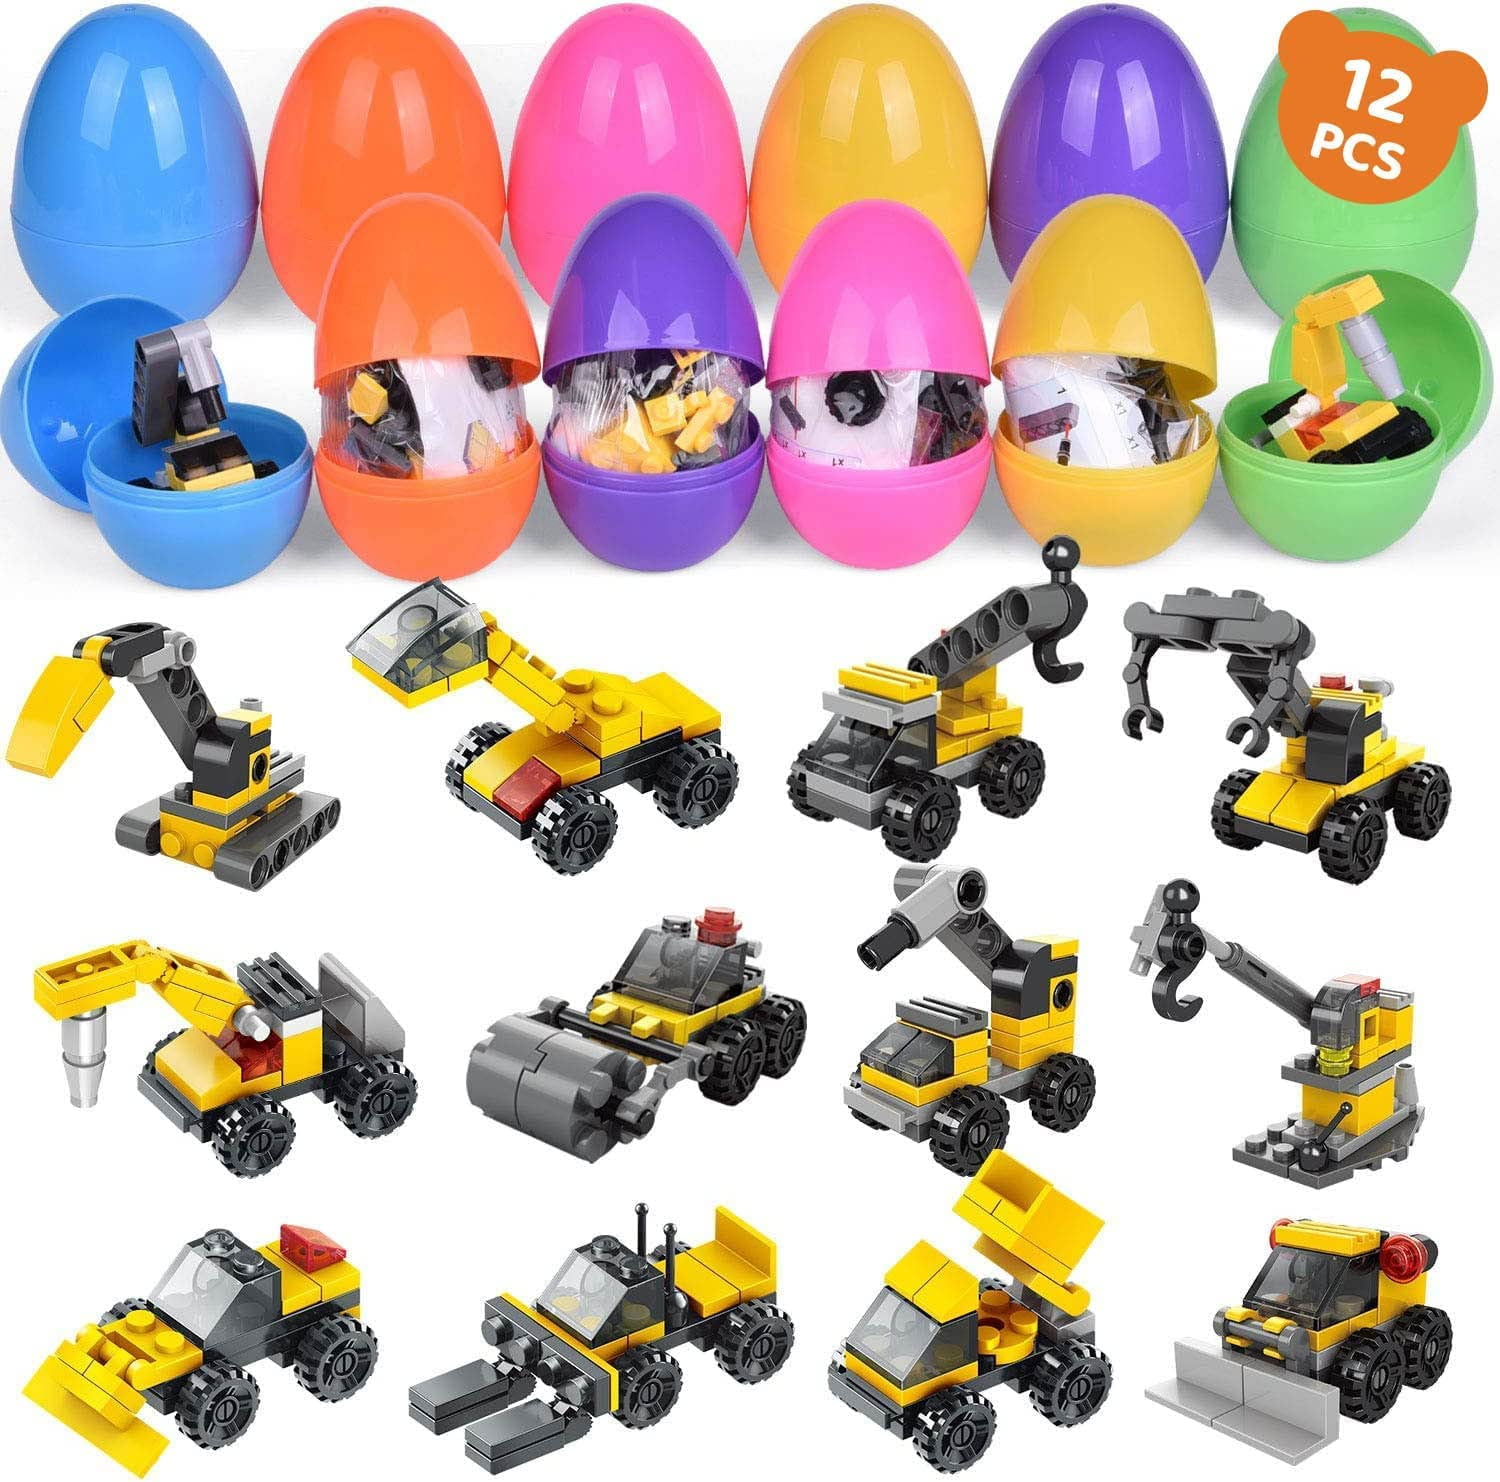 JOYIN 150pcs 2.3 Easter Eggs Kit with Golden Eggs for Kids